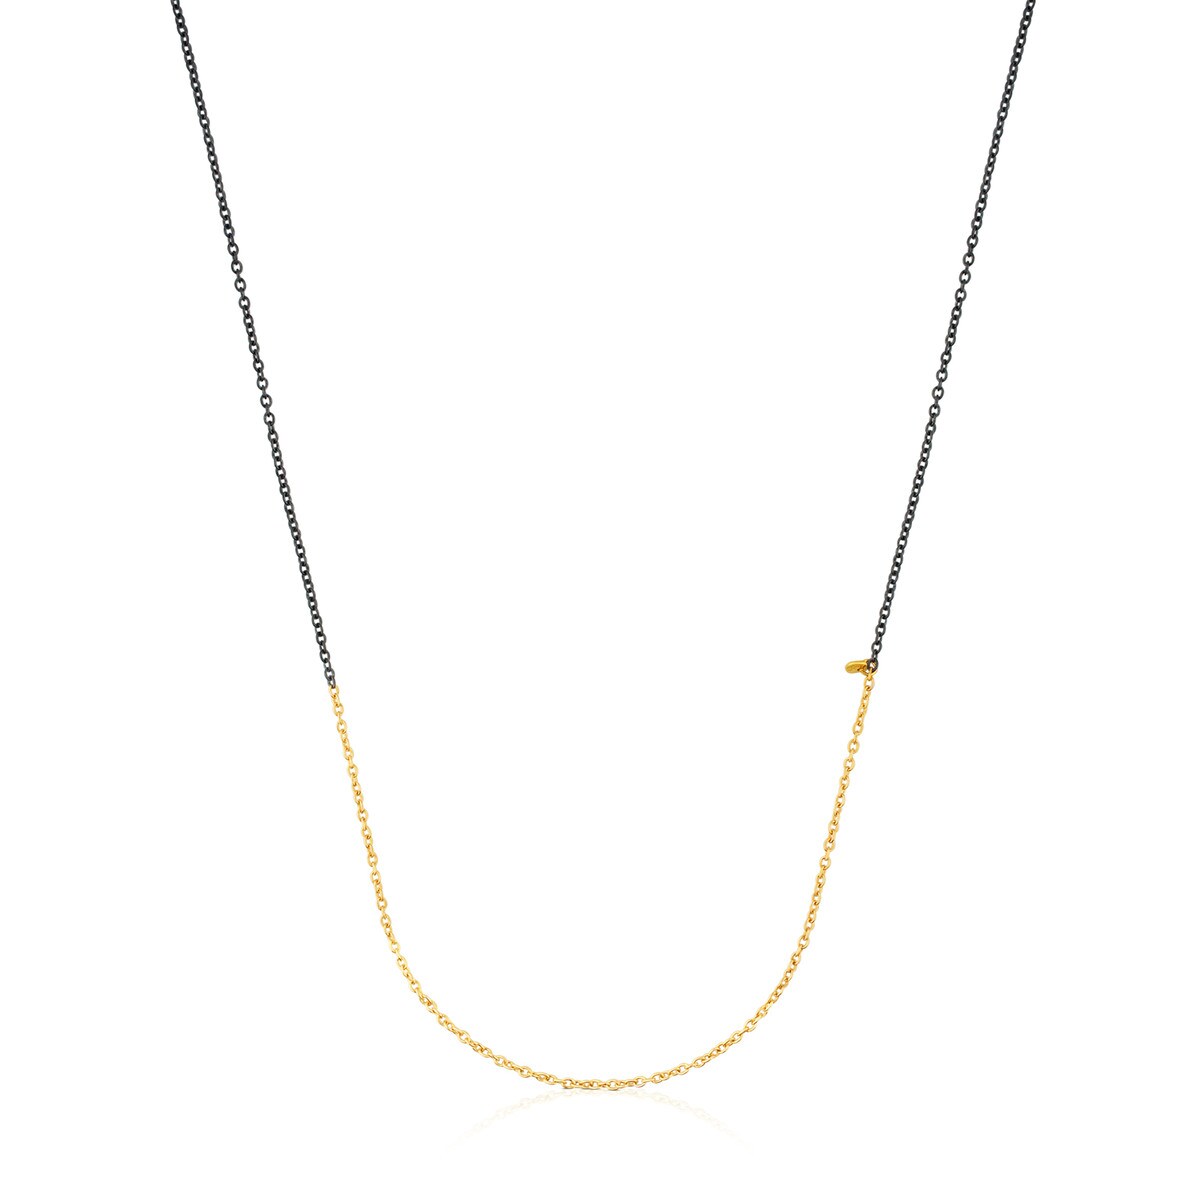 Cadena mediana de oro y plata pavonada, 50 cm Gem Power